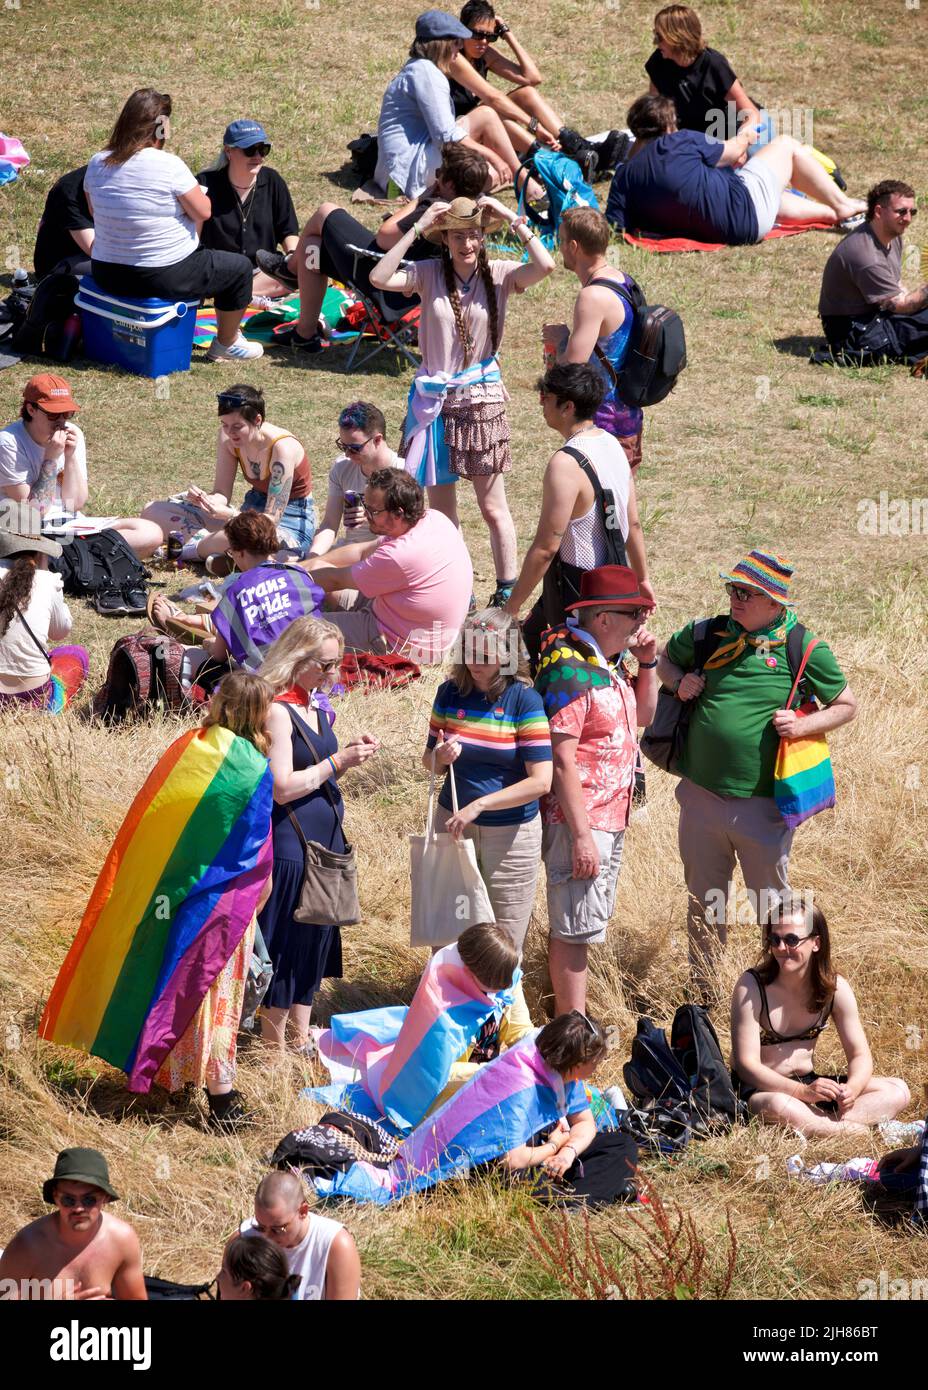 Festival de Procesión del Orgullo Trans, Brighton & Hove. 16 de julio de 2022. La gente se reúne para la culminación del Rally y Festival Trans Pride anual en Brunswick Square, Brighton & Hove, Inglaterra. Crédito: J. Marshall / Alamy Live News Foto de stock